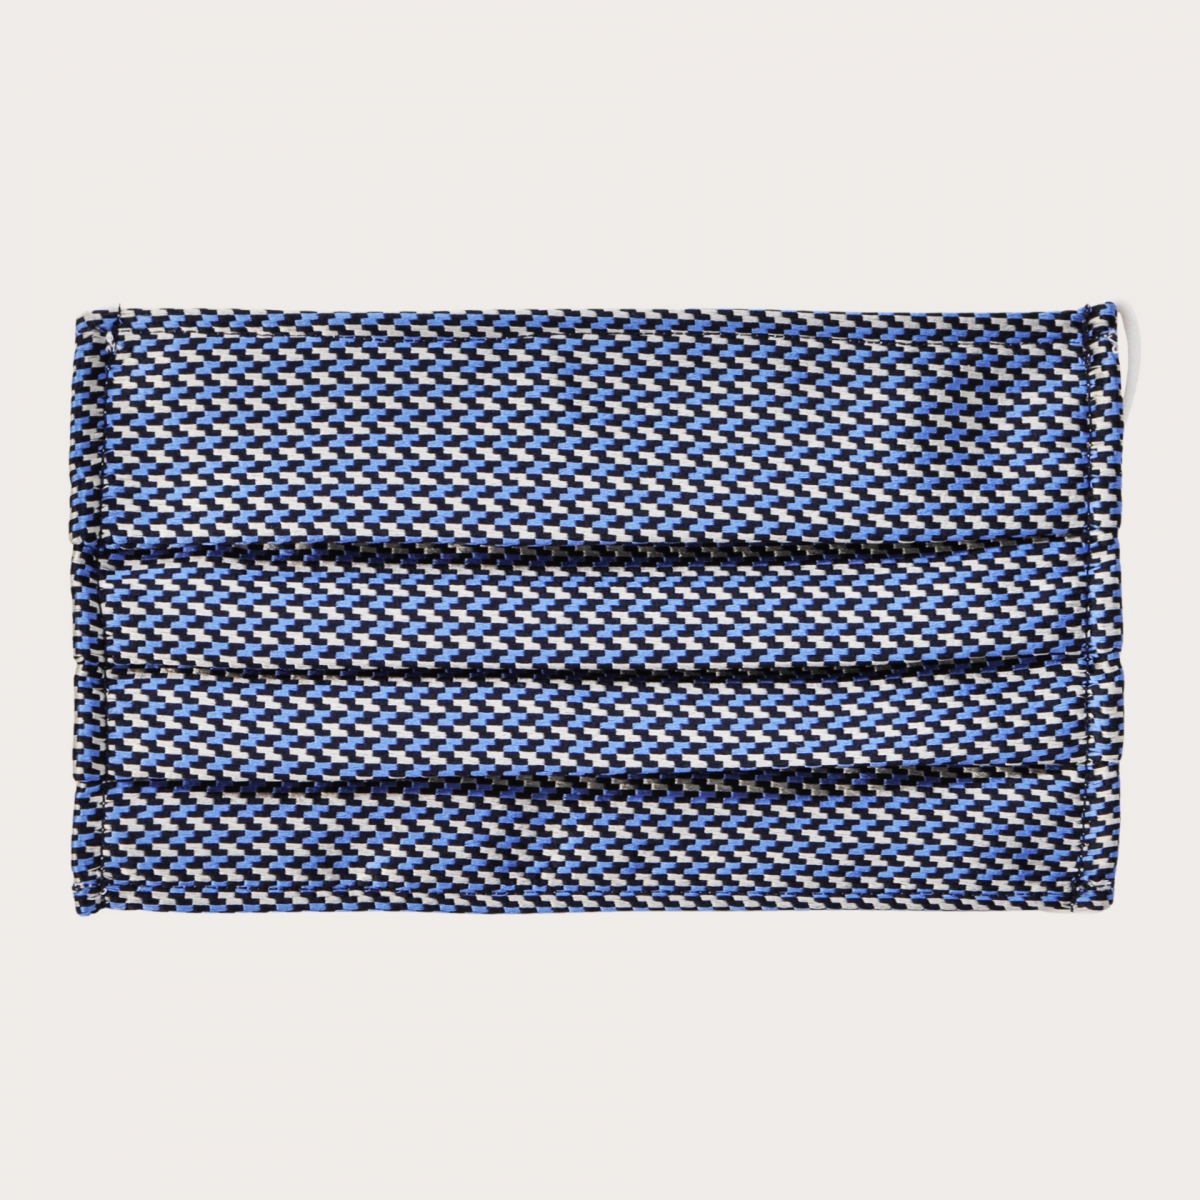 StyleMask Seidenfilter Gesichtsmaske mit geometrisches Muster in Silber und Blau